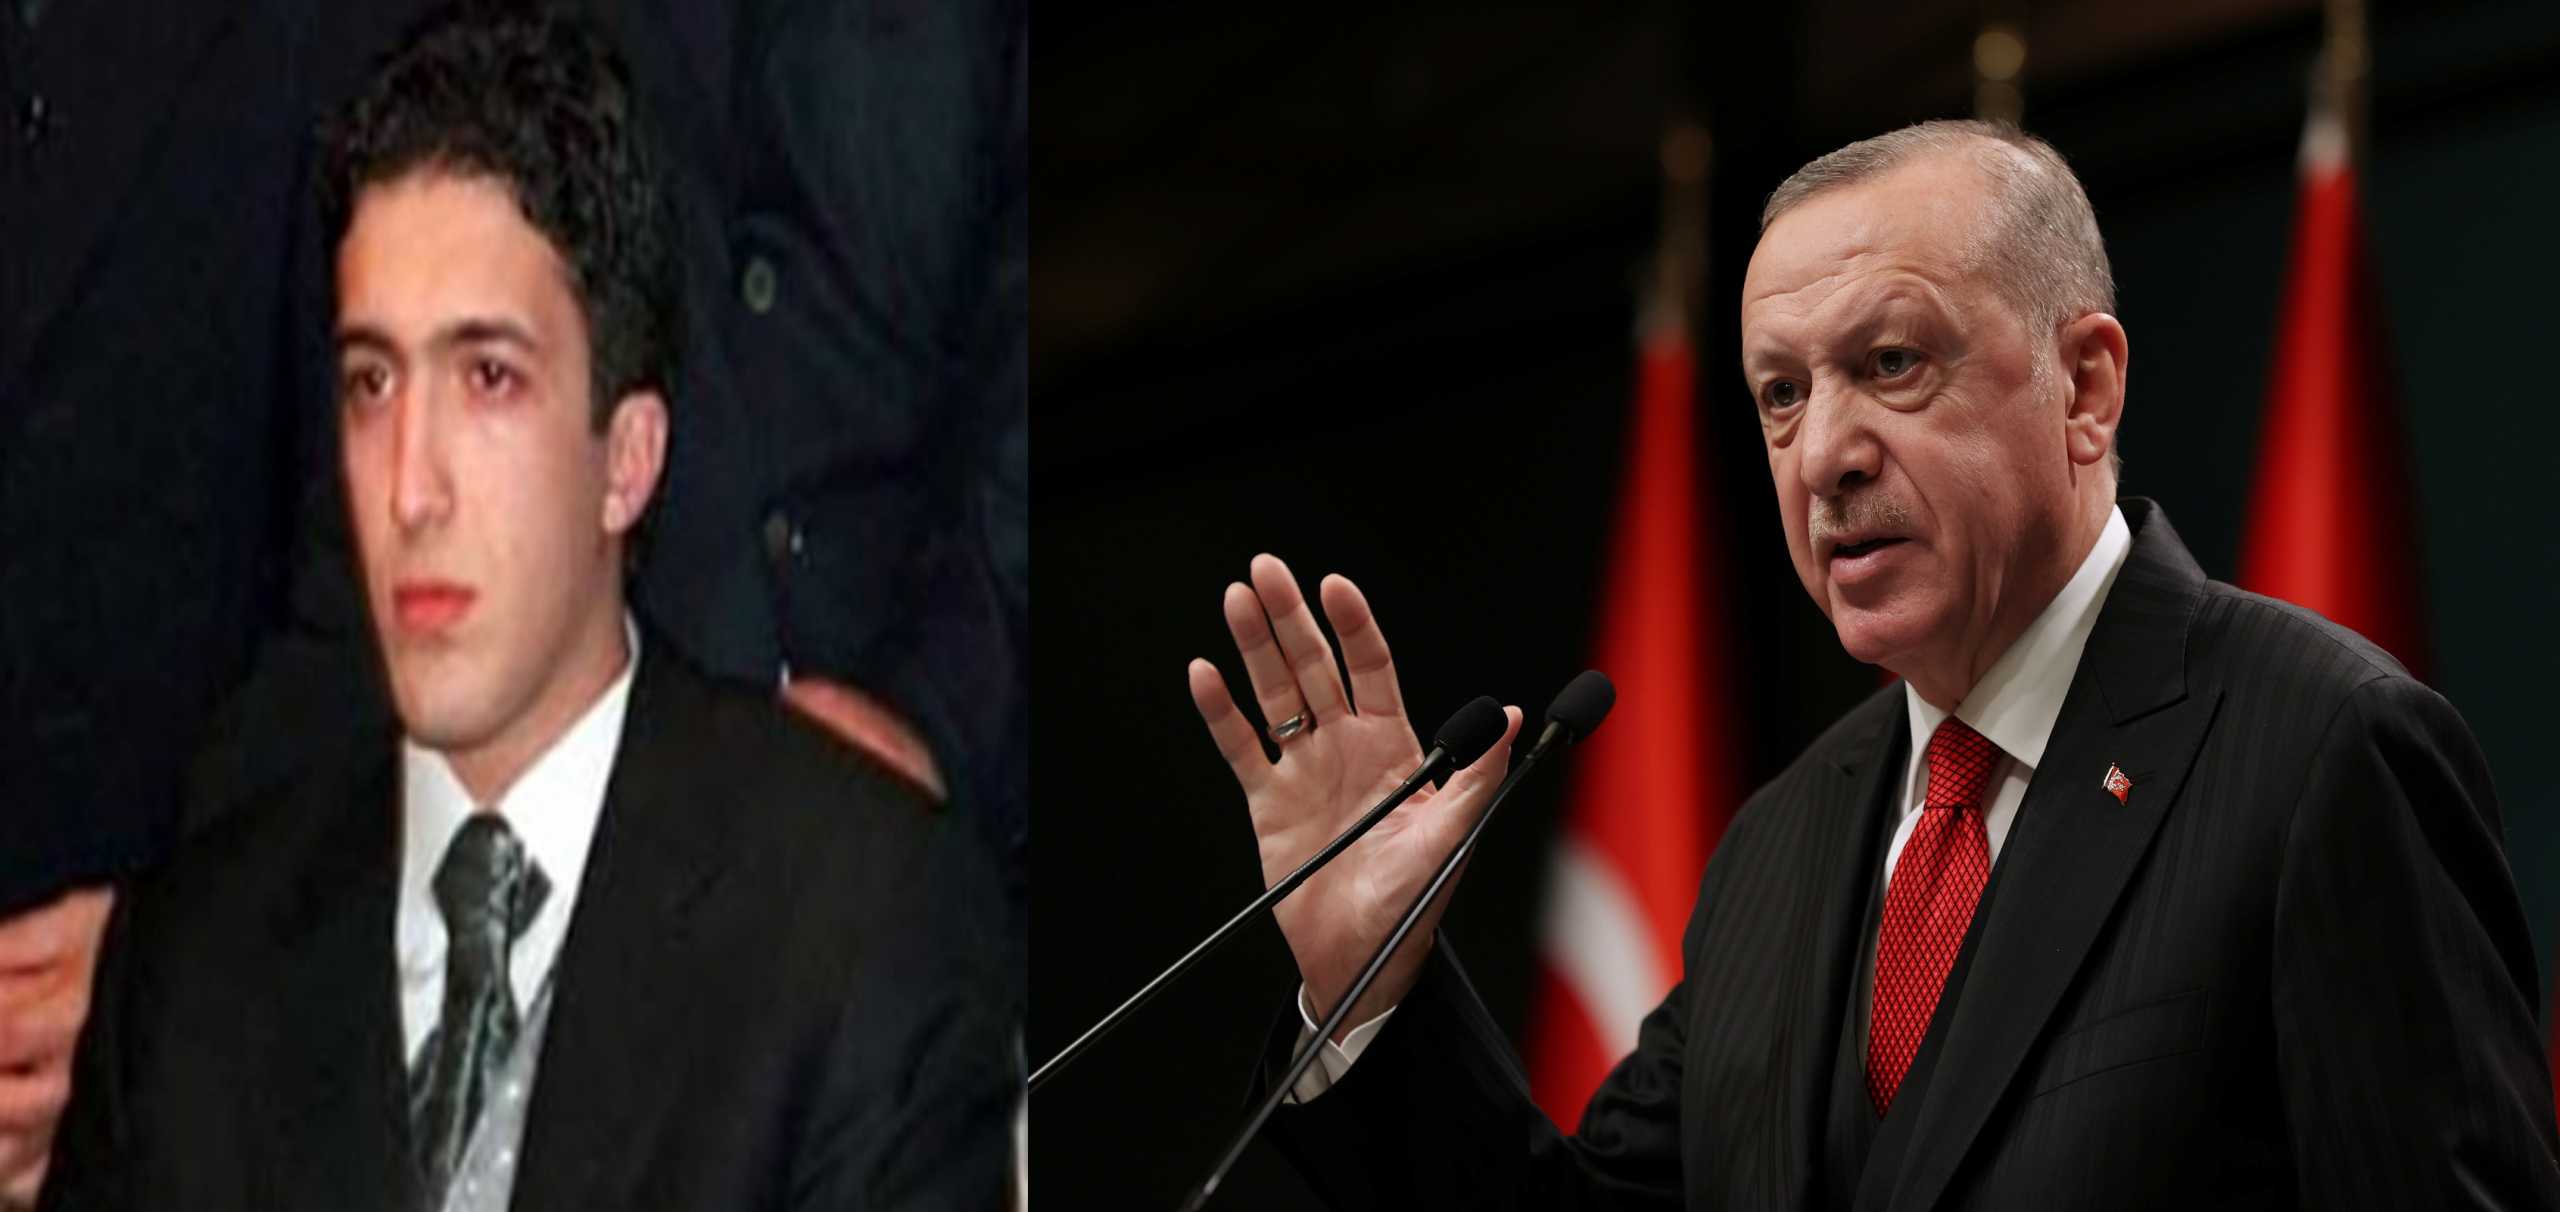 Τουρκία: Η αντιπολίτευση ζητά εξηγήσεις από τον Ακάρ για τον γιο του Ερντογάν